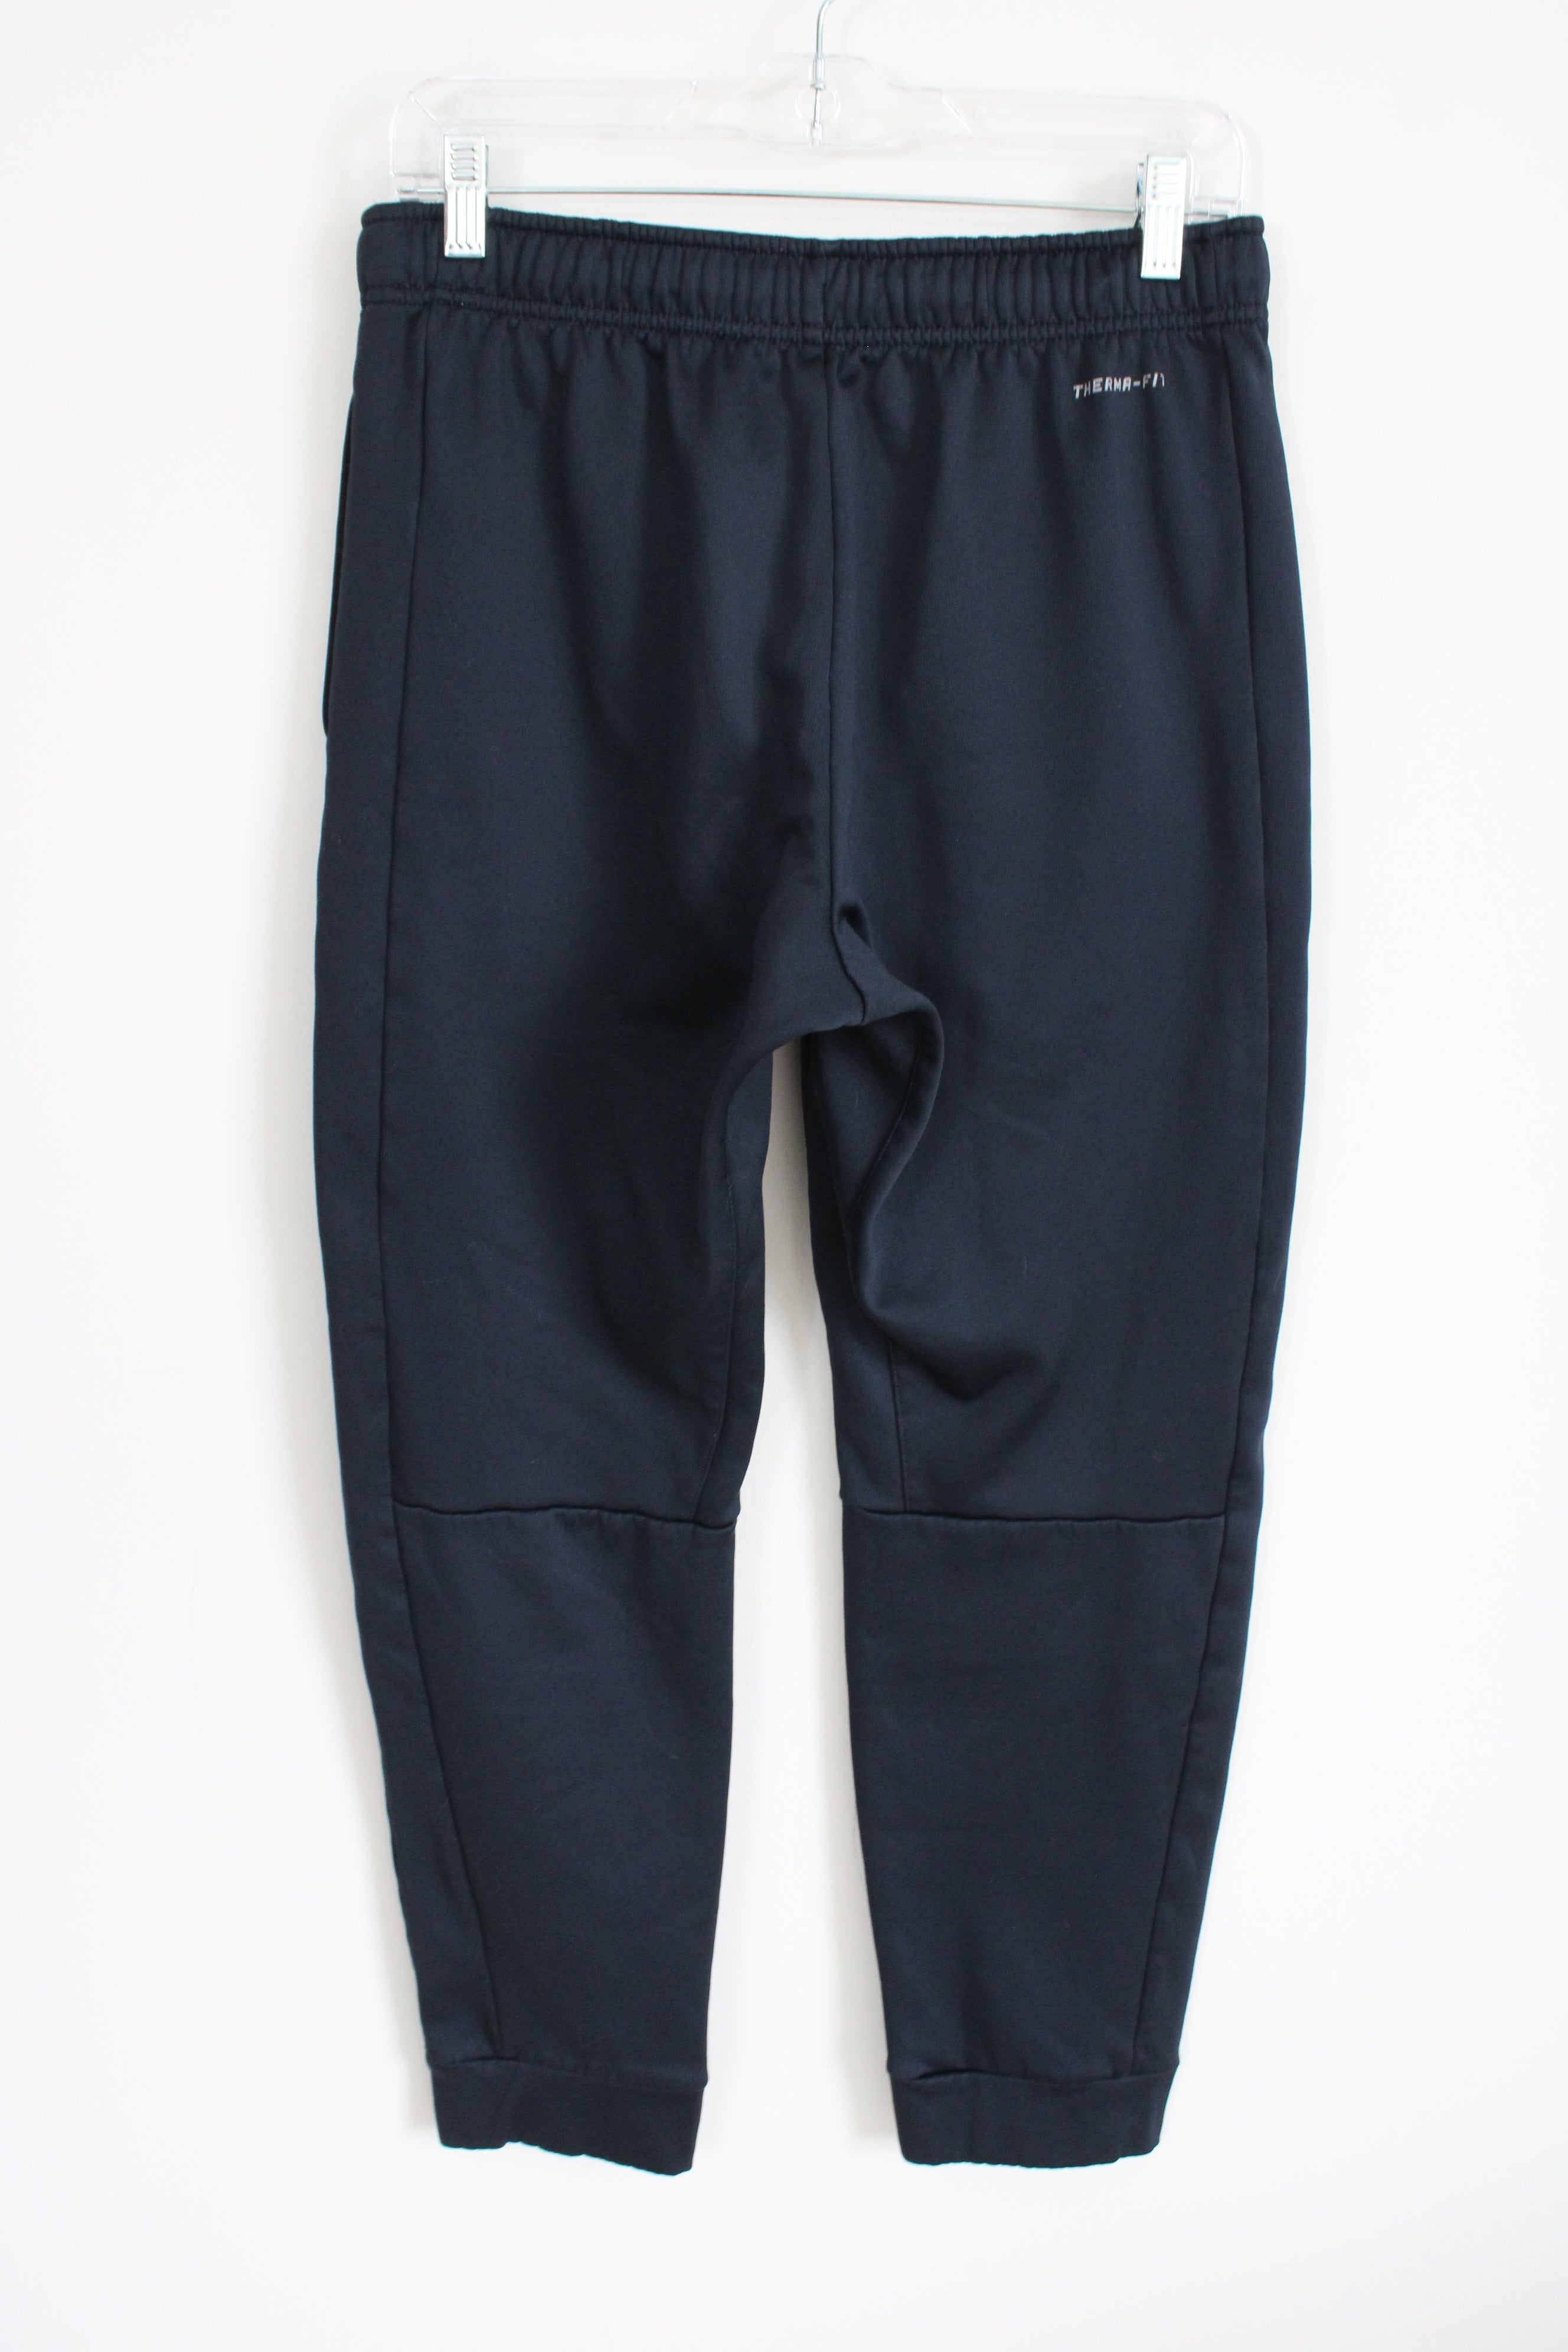 Nike Dark Navy Blue Fleece Lined Sweatpants | M